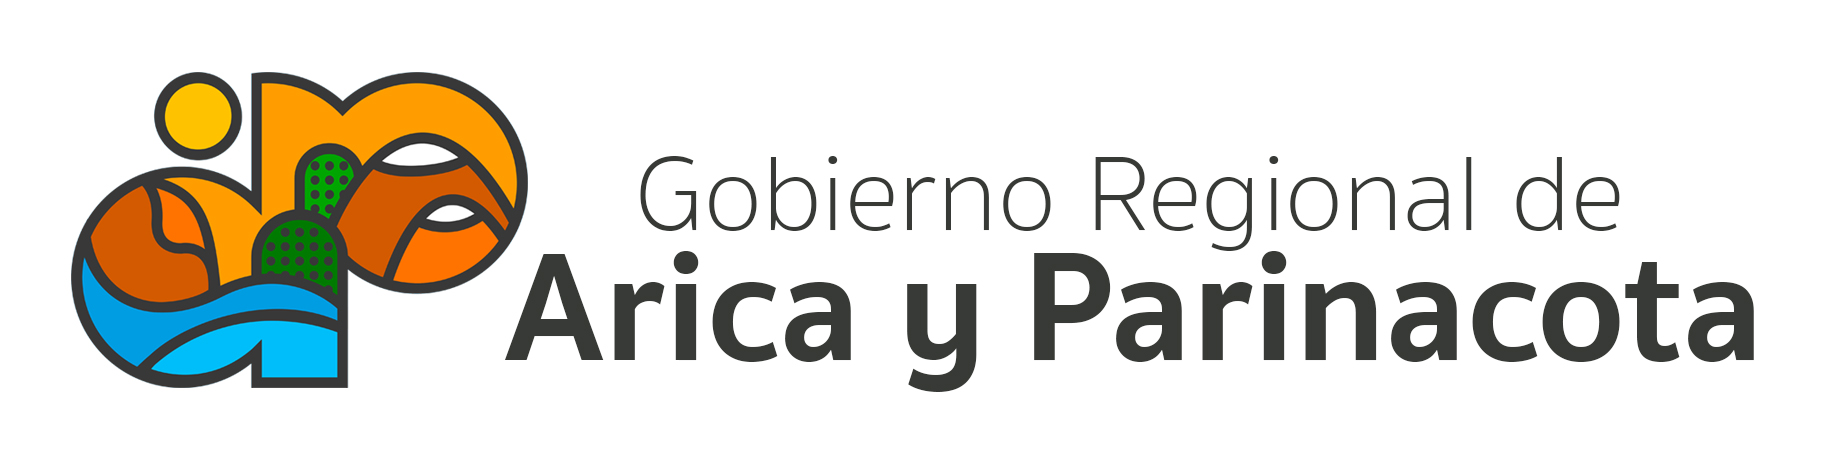 Gobierno Regional de Arica y Parinacota